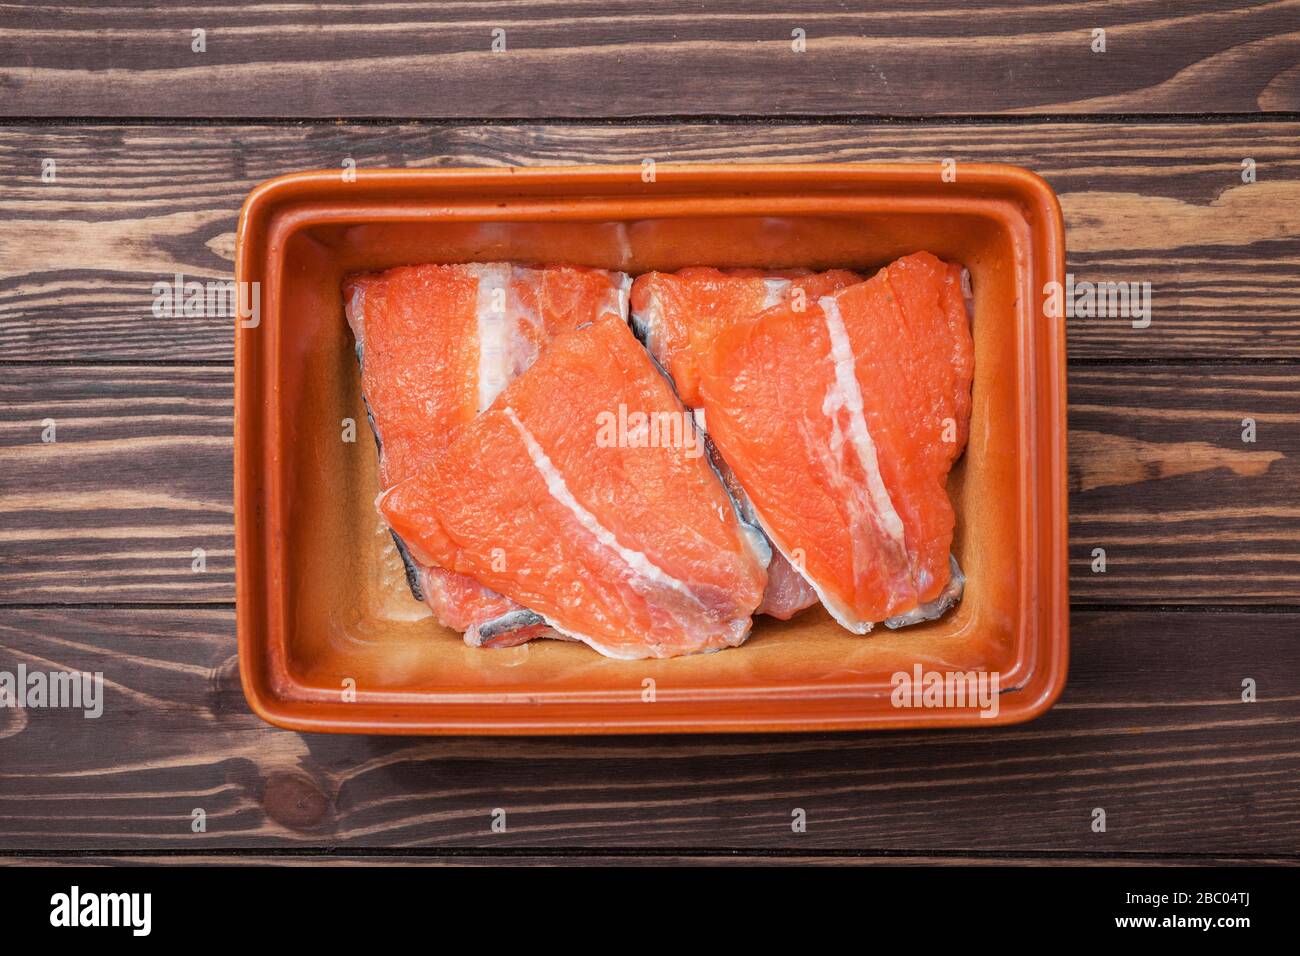 Steaks marinés de poisson rouge. Dans un bol en céramique sur des planches en bois. Prise de vue de dessus. Banque D'Images